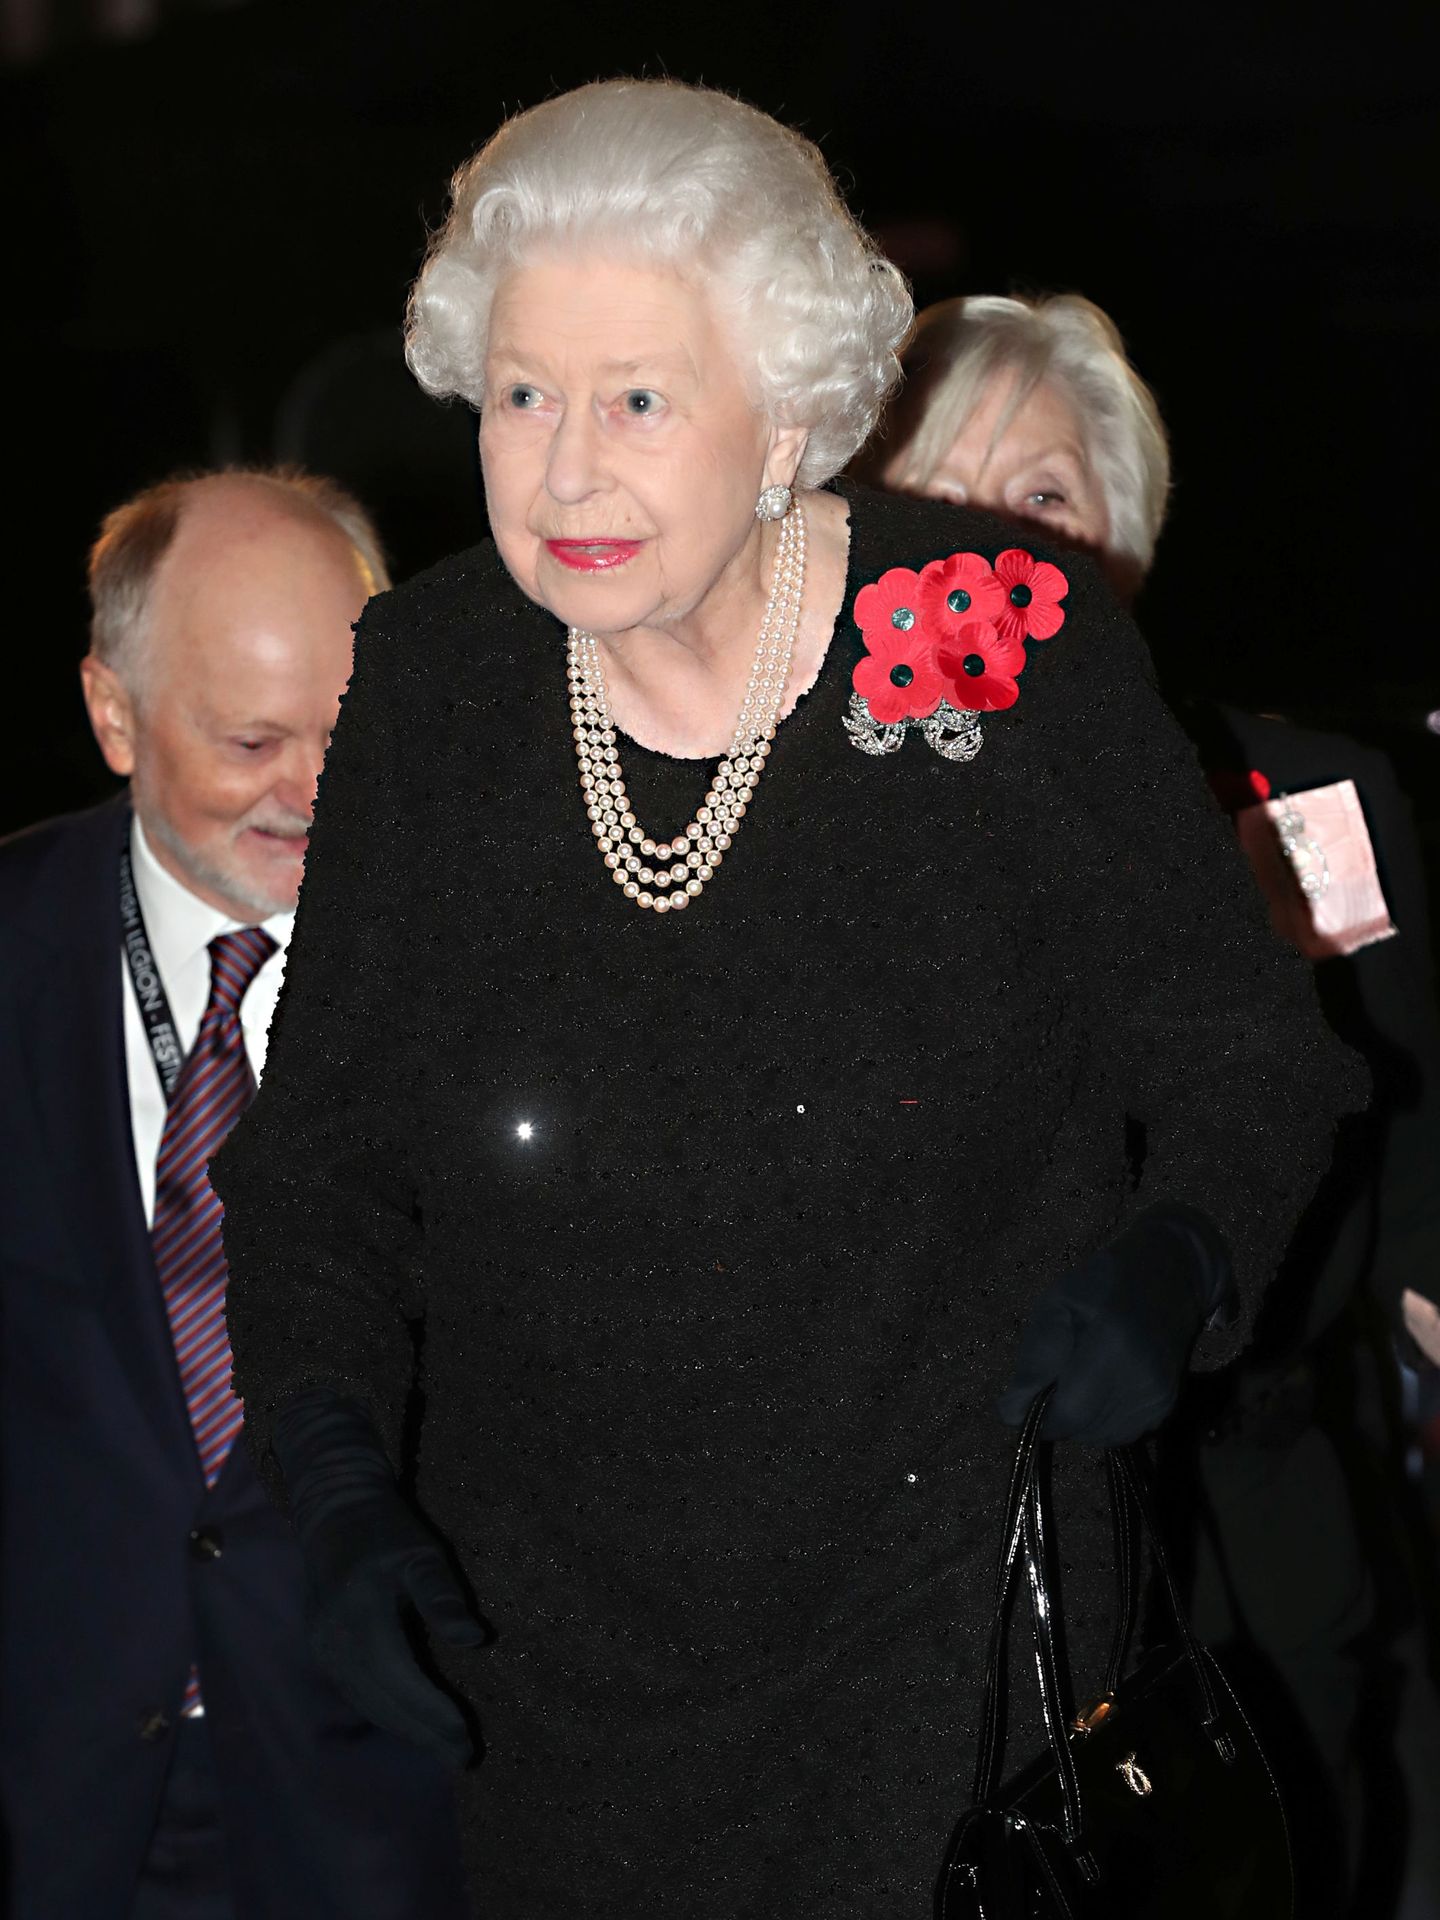 La reina Isabel II, también de negro, con collar de perlas y luciendo en la solapa, al igual que Kate y Meghan, flores de amapola. (Reuters)